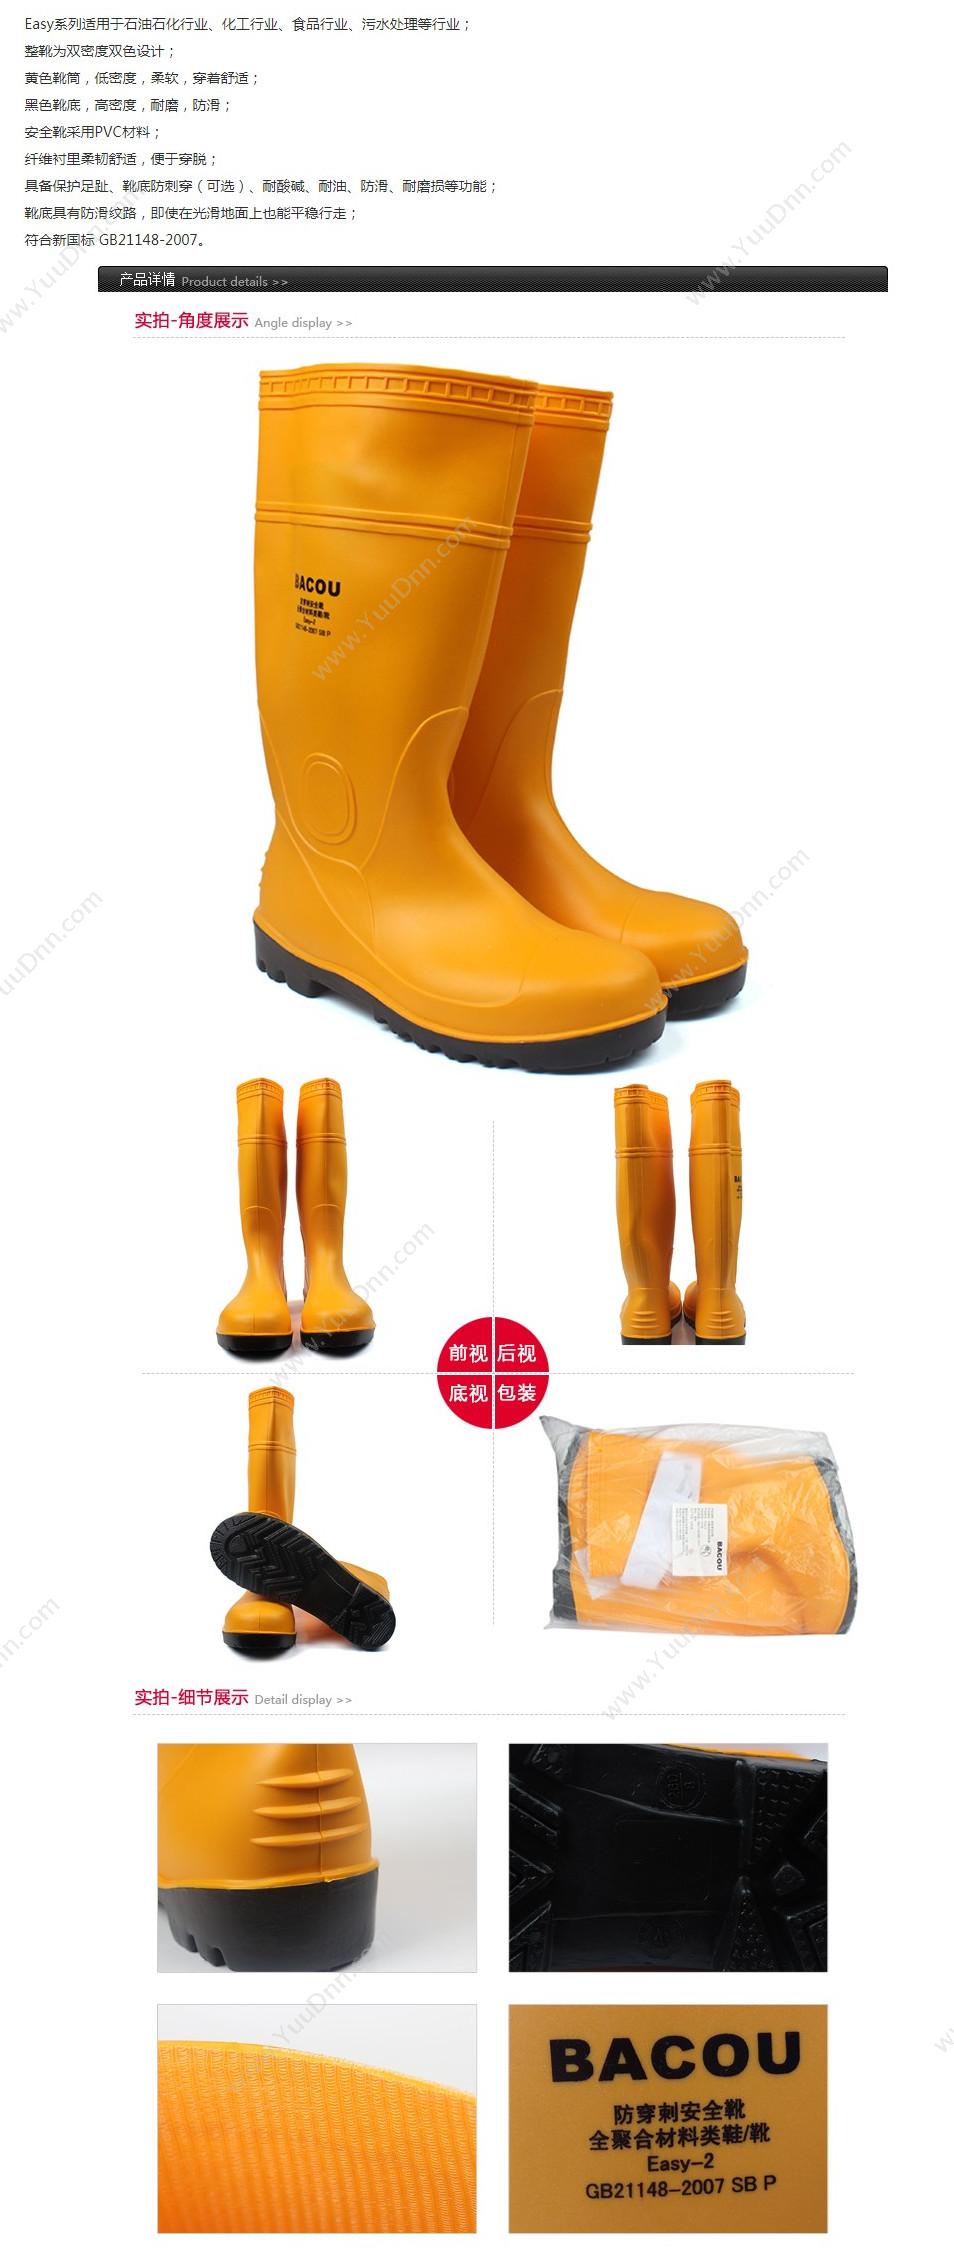 霍尼韦尔 Honeywell 75707 PVC 安全靴Easy 轻型 39 橘黄色 10双/箱 轻便鞋安全靴